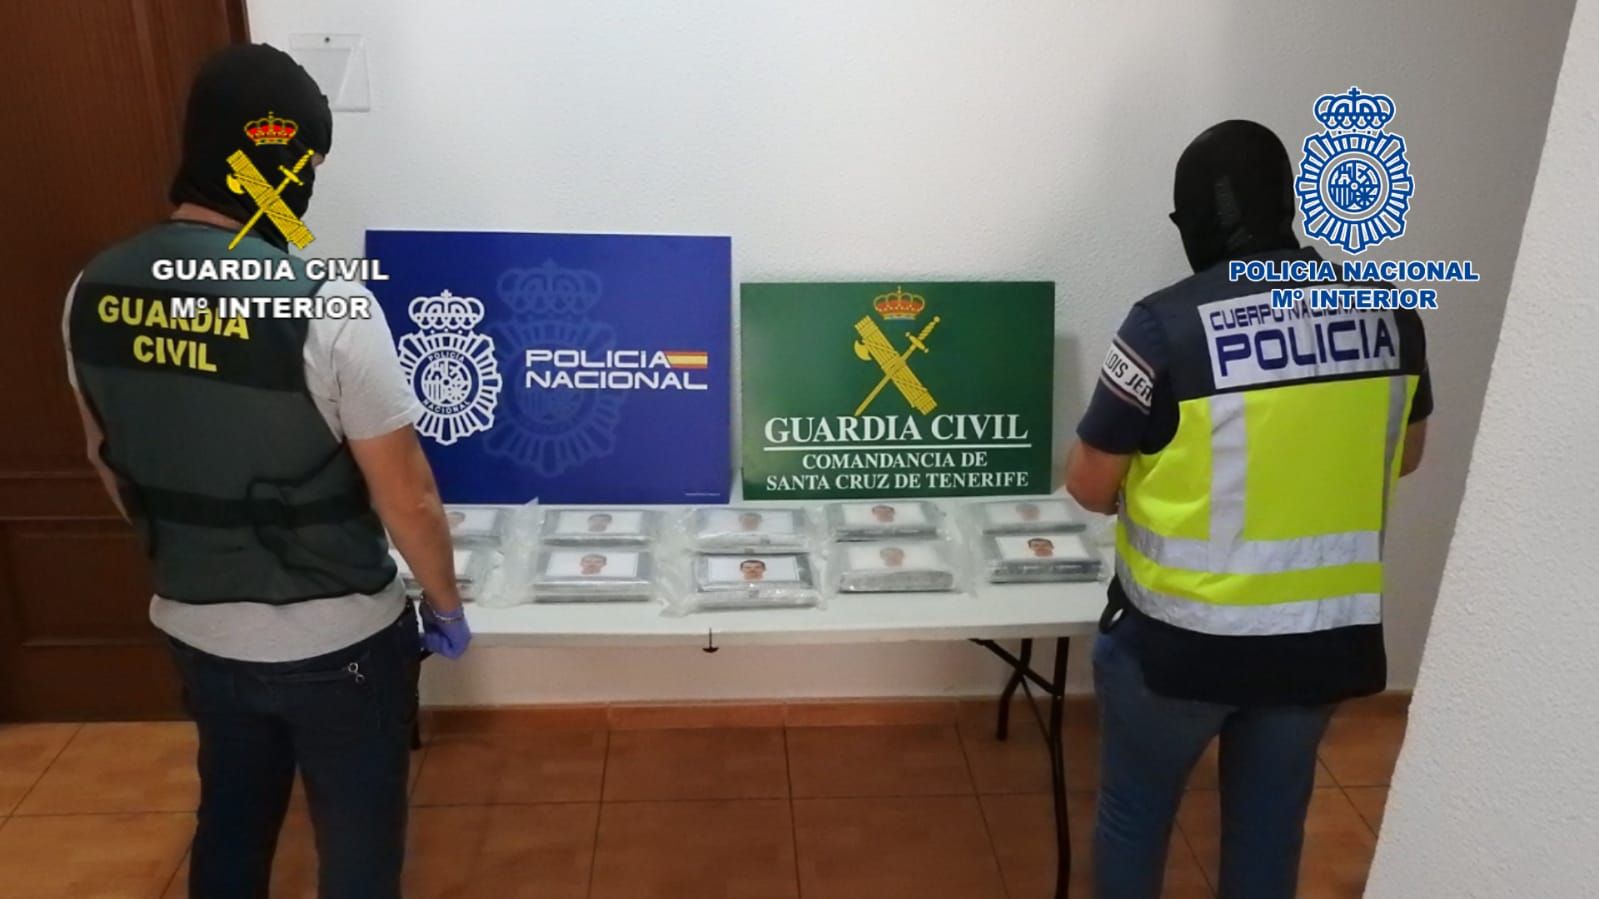 Desarticulan en Canarias una organización criminal dedicada al tráfico de cocaína a gran escala